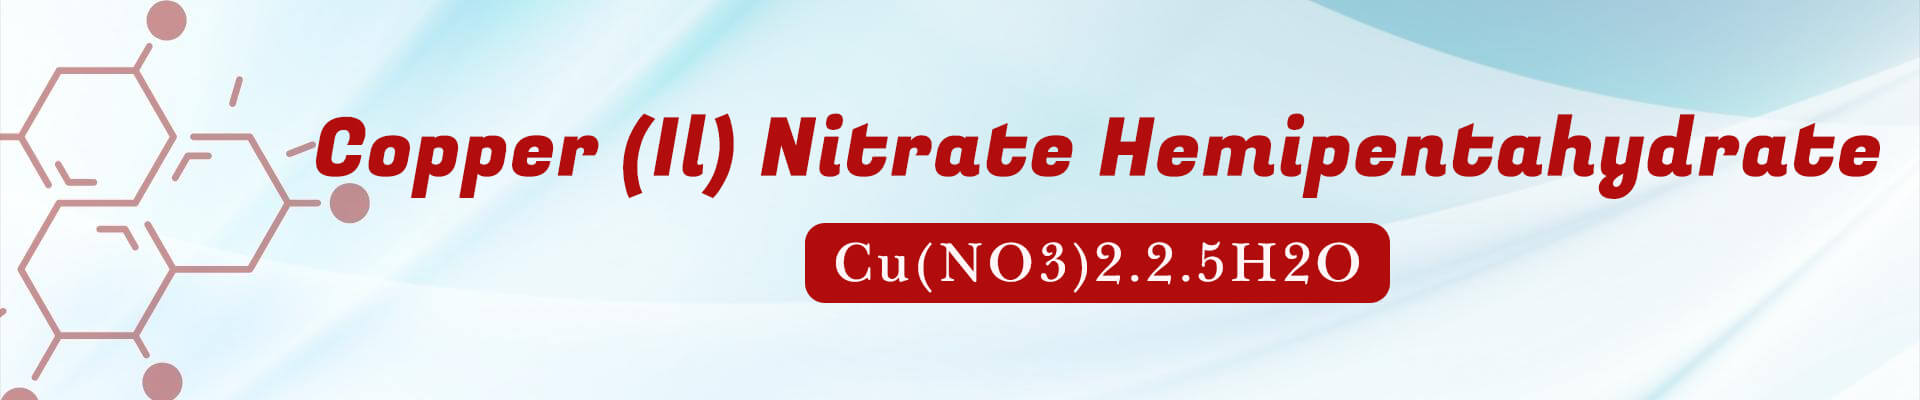 Copper (II) Nitrate Hemipentahydrate